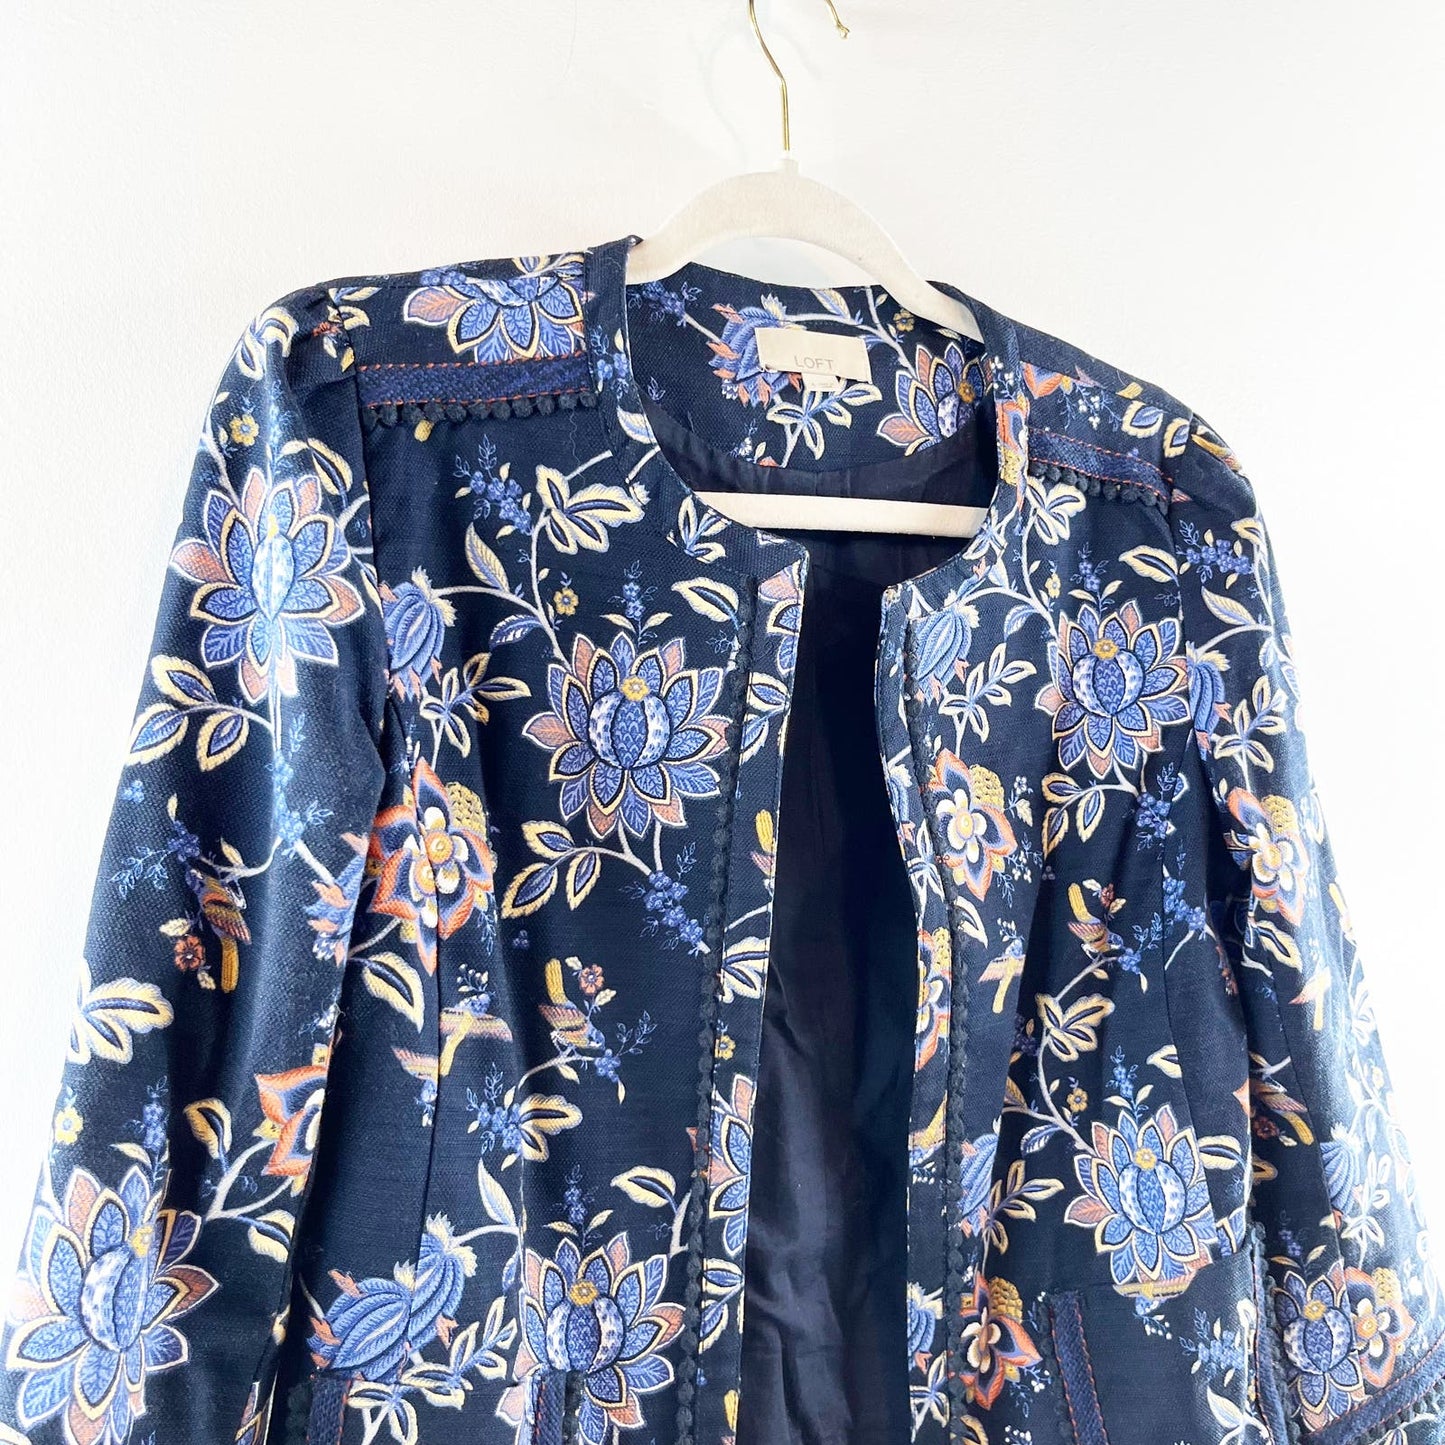 LOFT Cropped Floral Jaquard Open Blazer Jacket Navy Blue 4